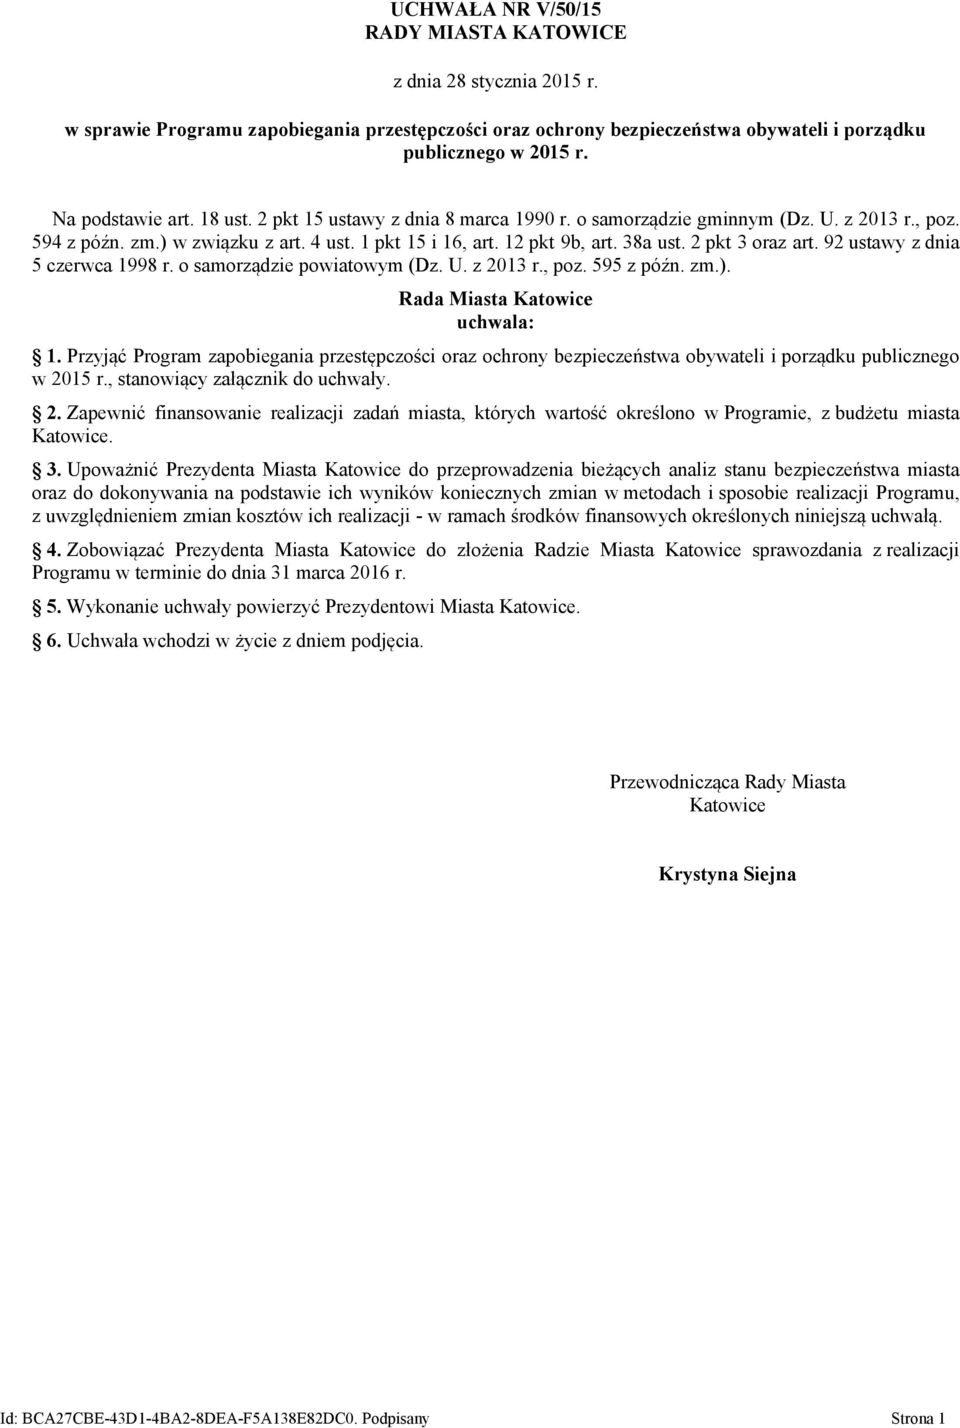 2 pkt 3 oraz art. 92 ustawy z dnia 5 czerwca 1998 r. o samorządzie powiatowym (Dz. U. z 2013 r., poz. 595 z późn. zm.). Rada Miasta Katowice uchwala: 1.